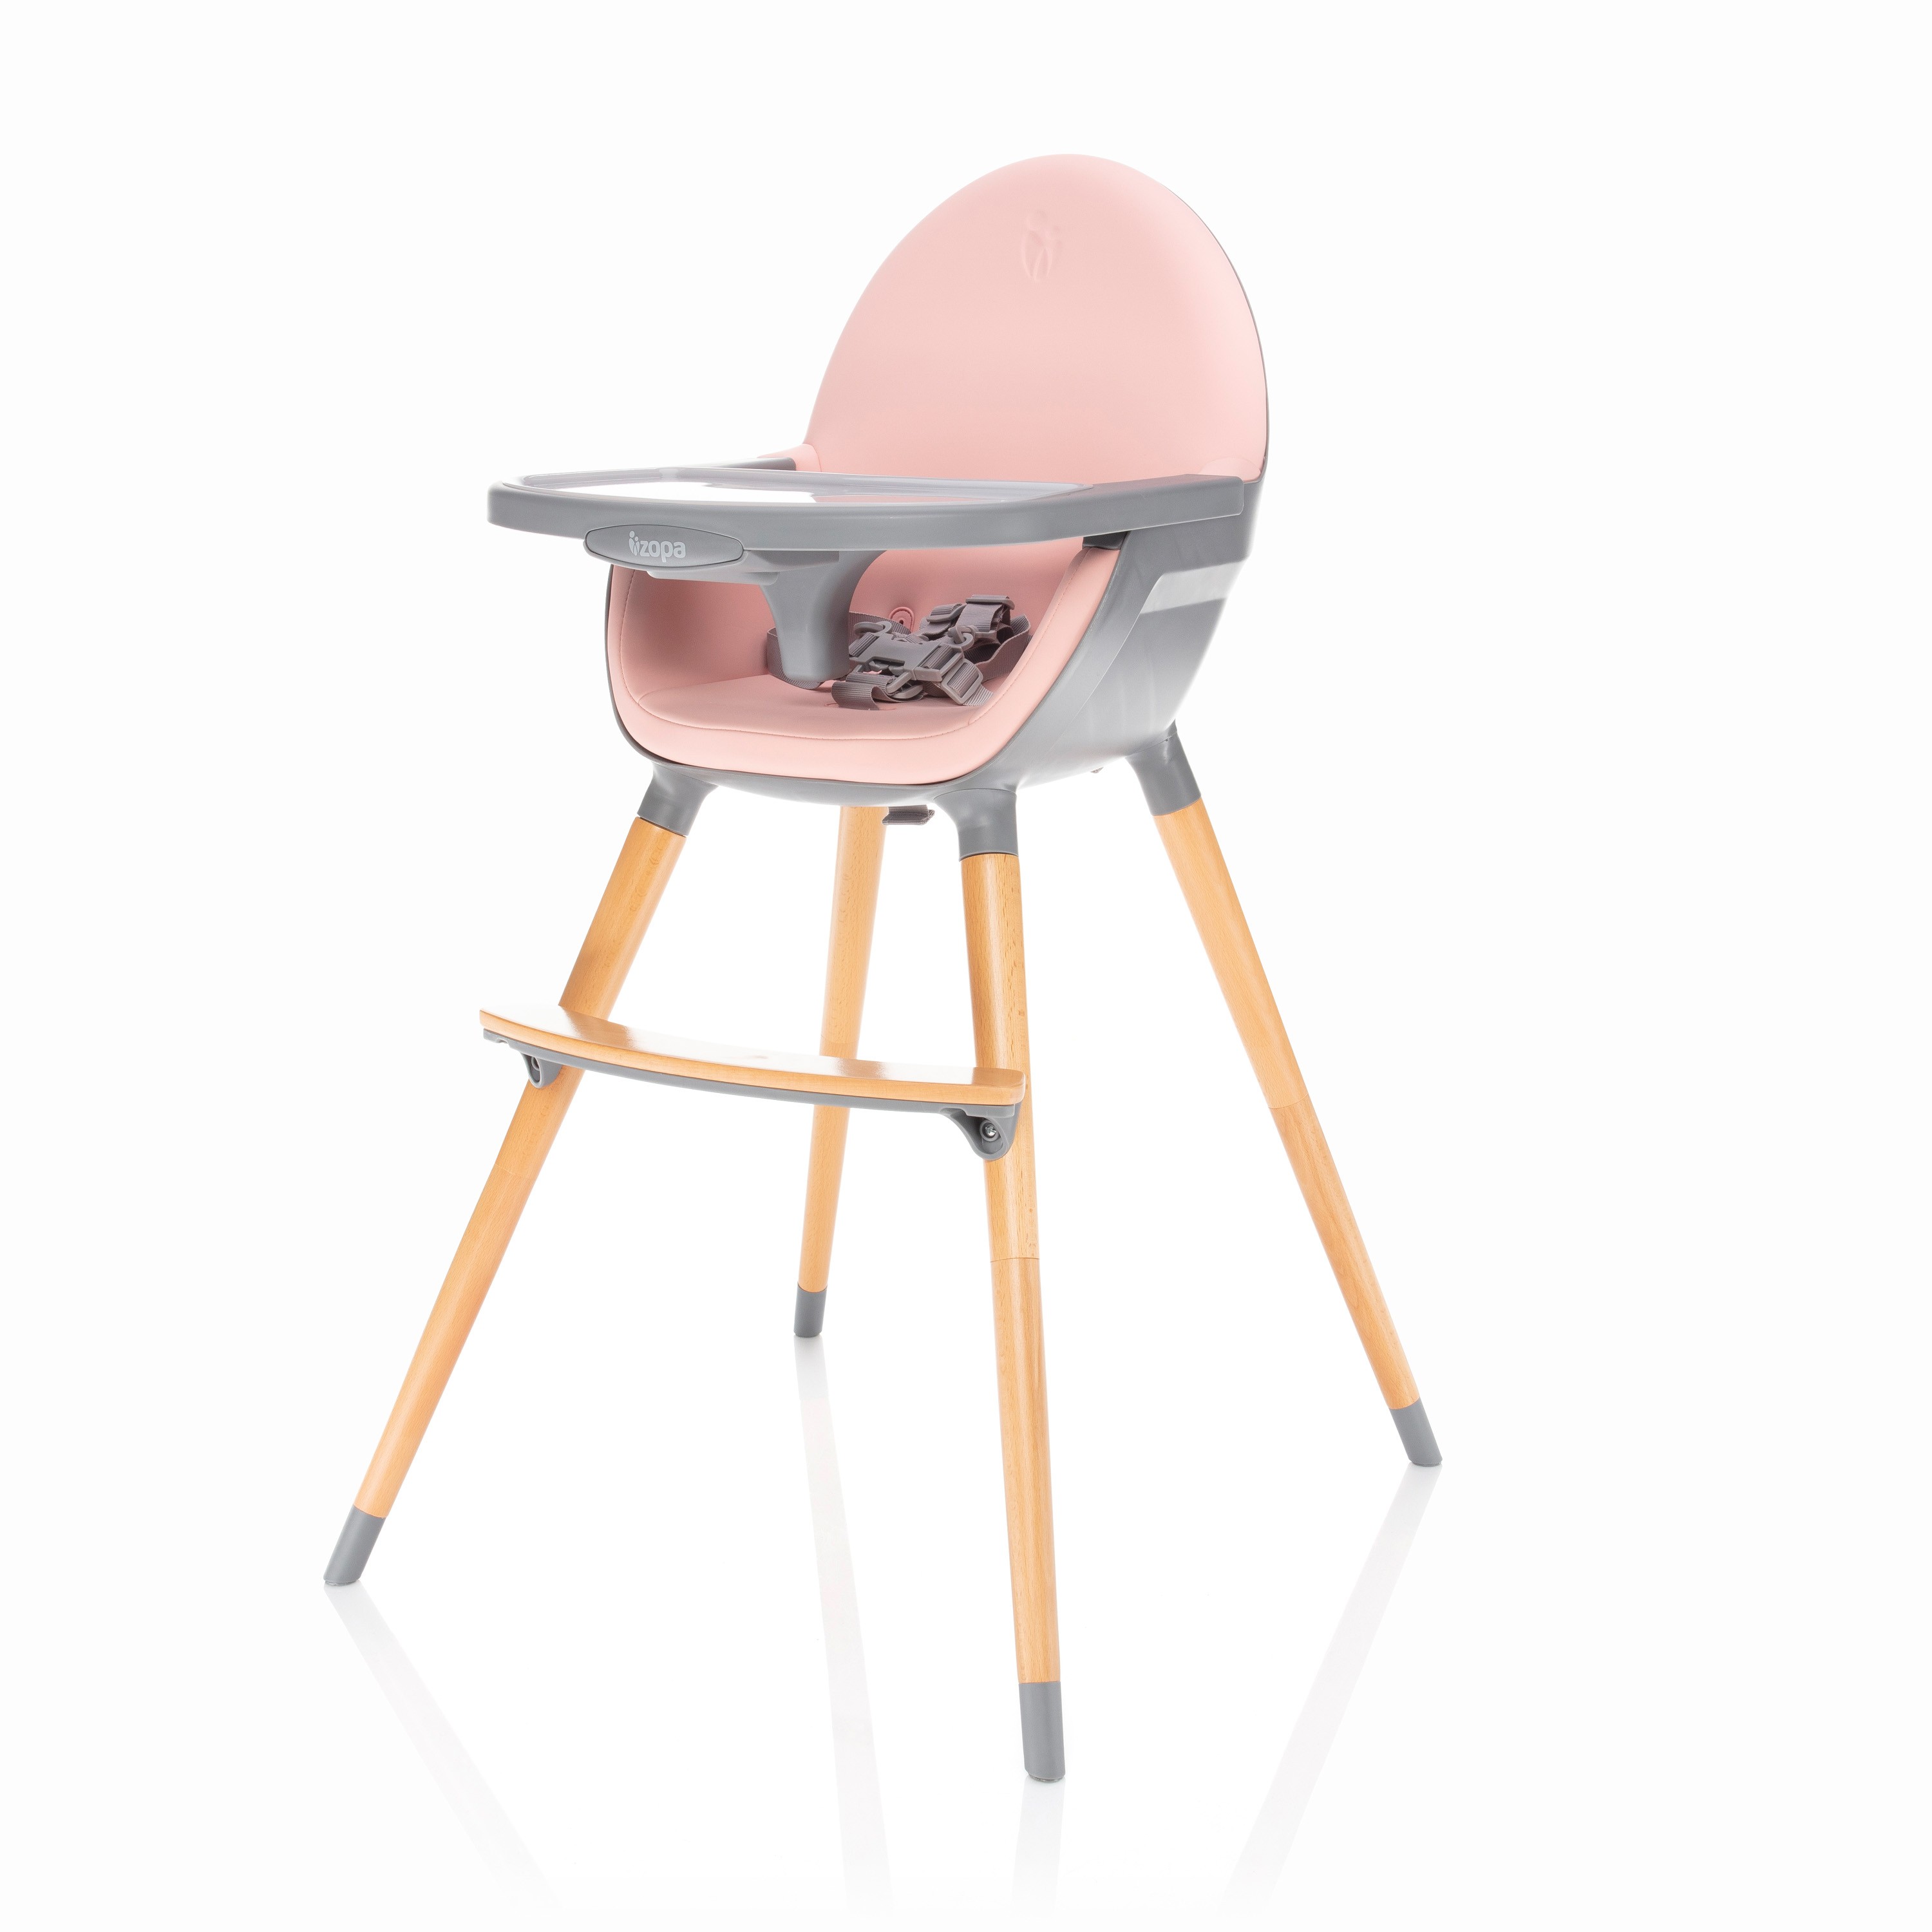 Jedálenská stolička Zopa Dolce - Blush Pink/Grey 2019